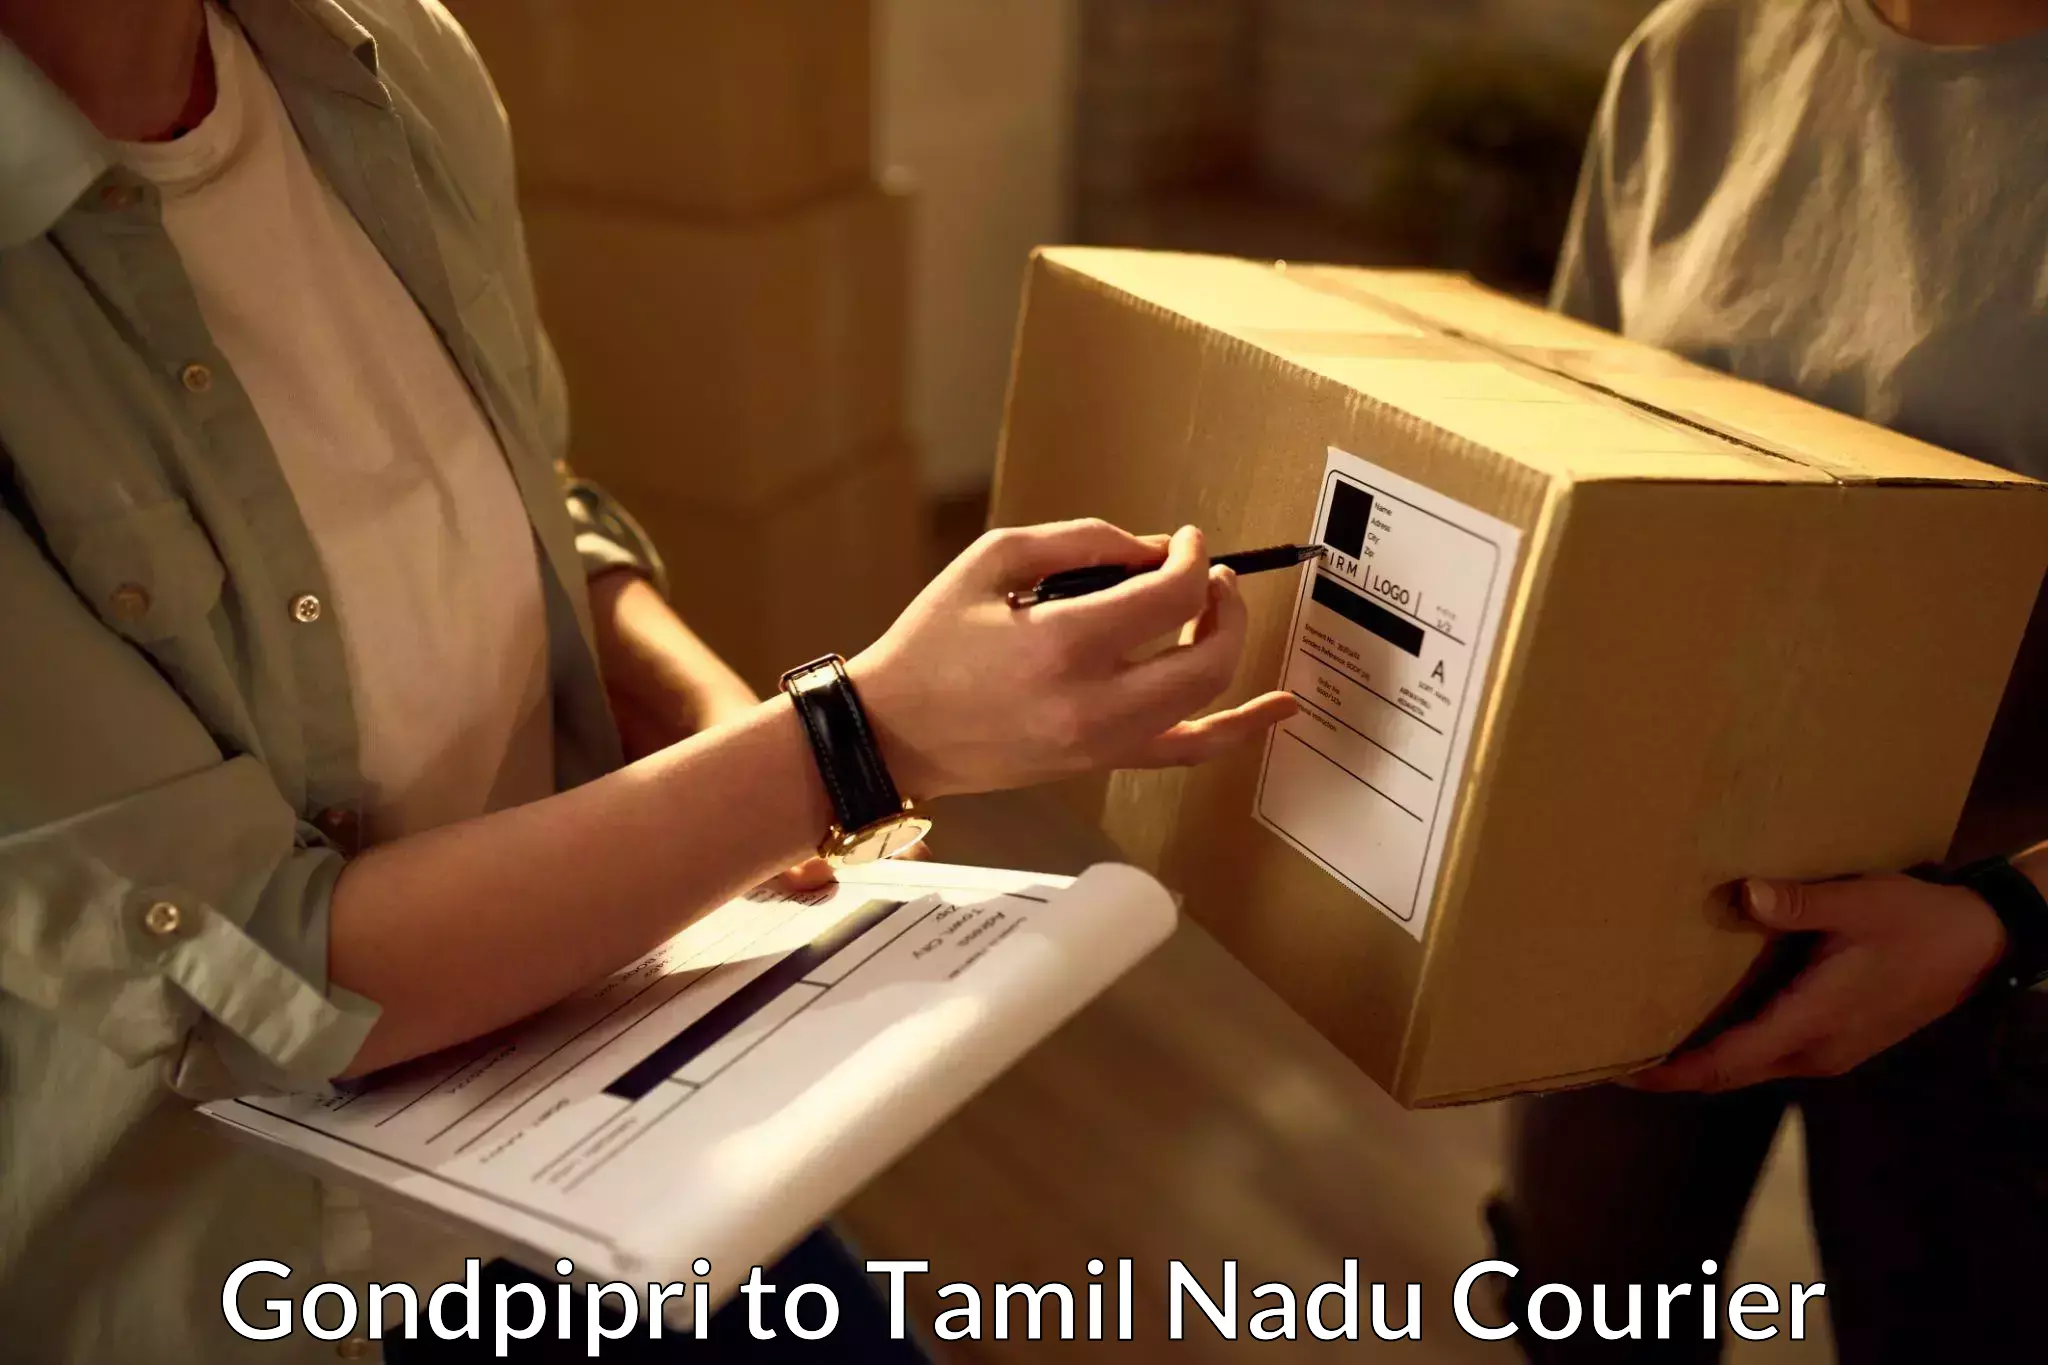 Optimized delivery routes Gondpipri to Pudukkottai